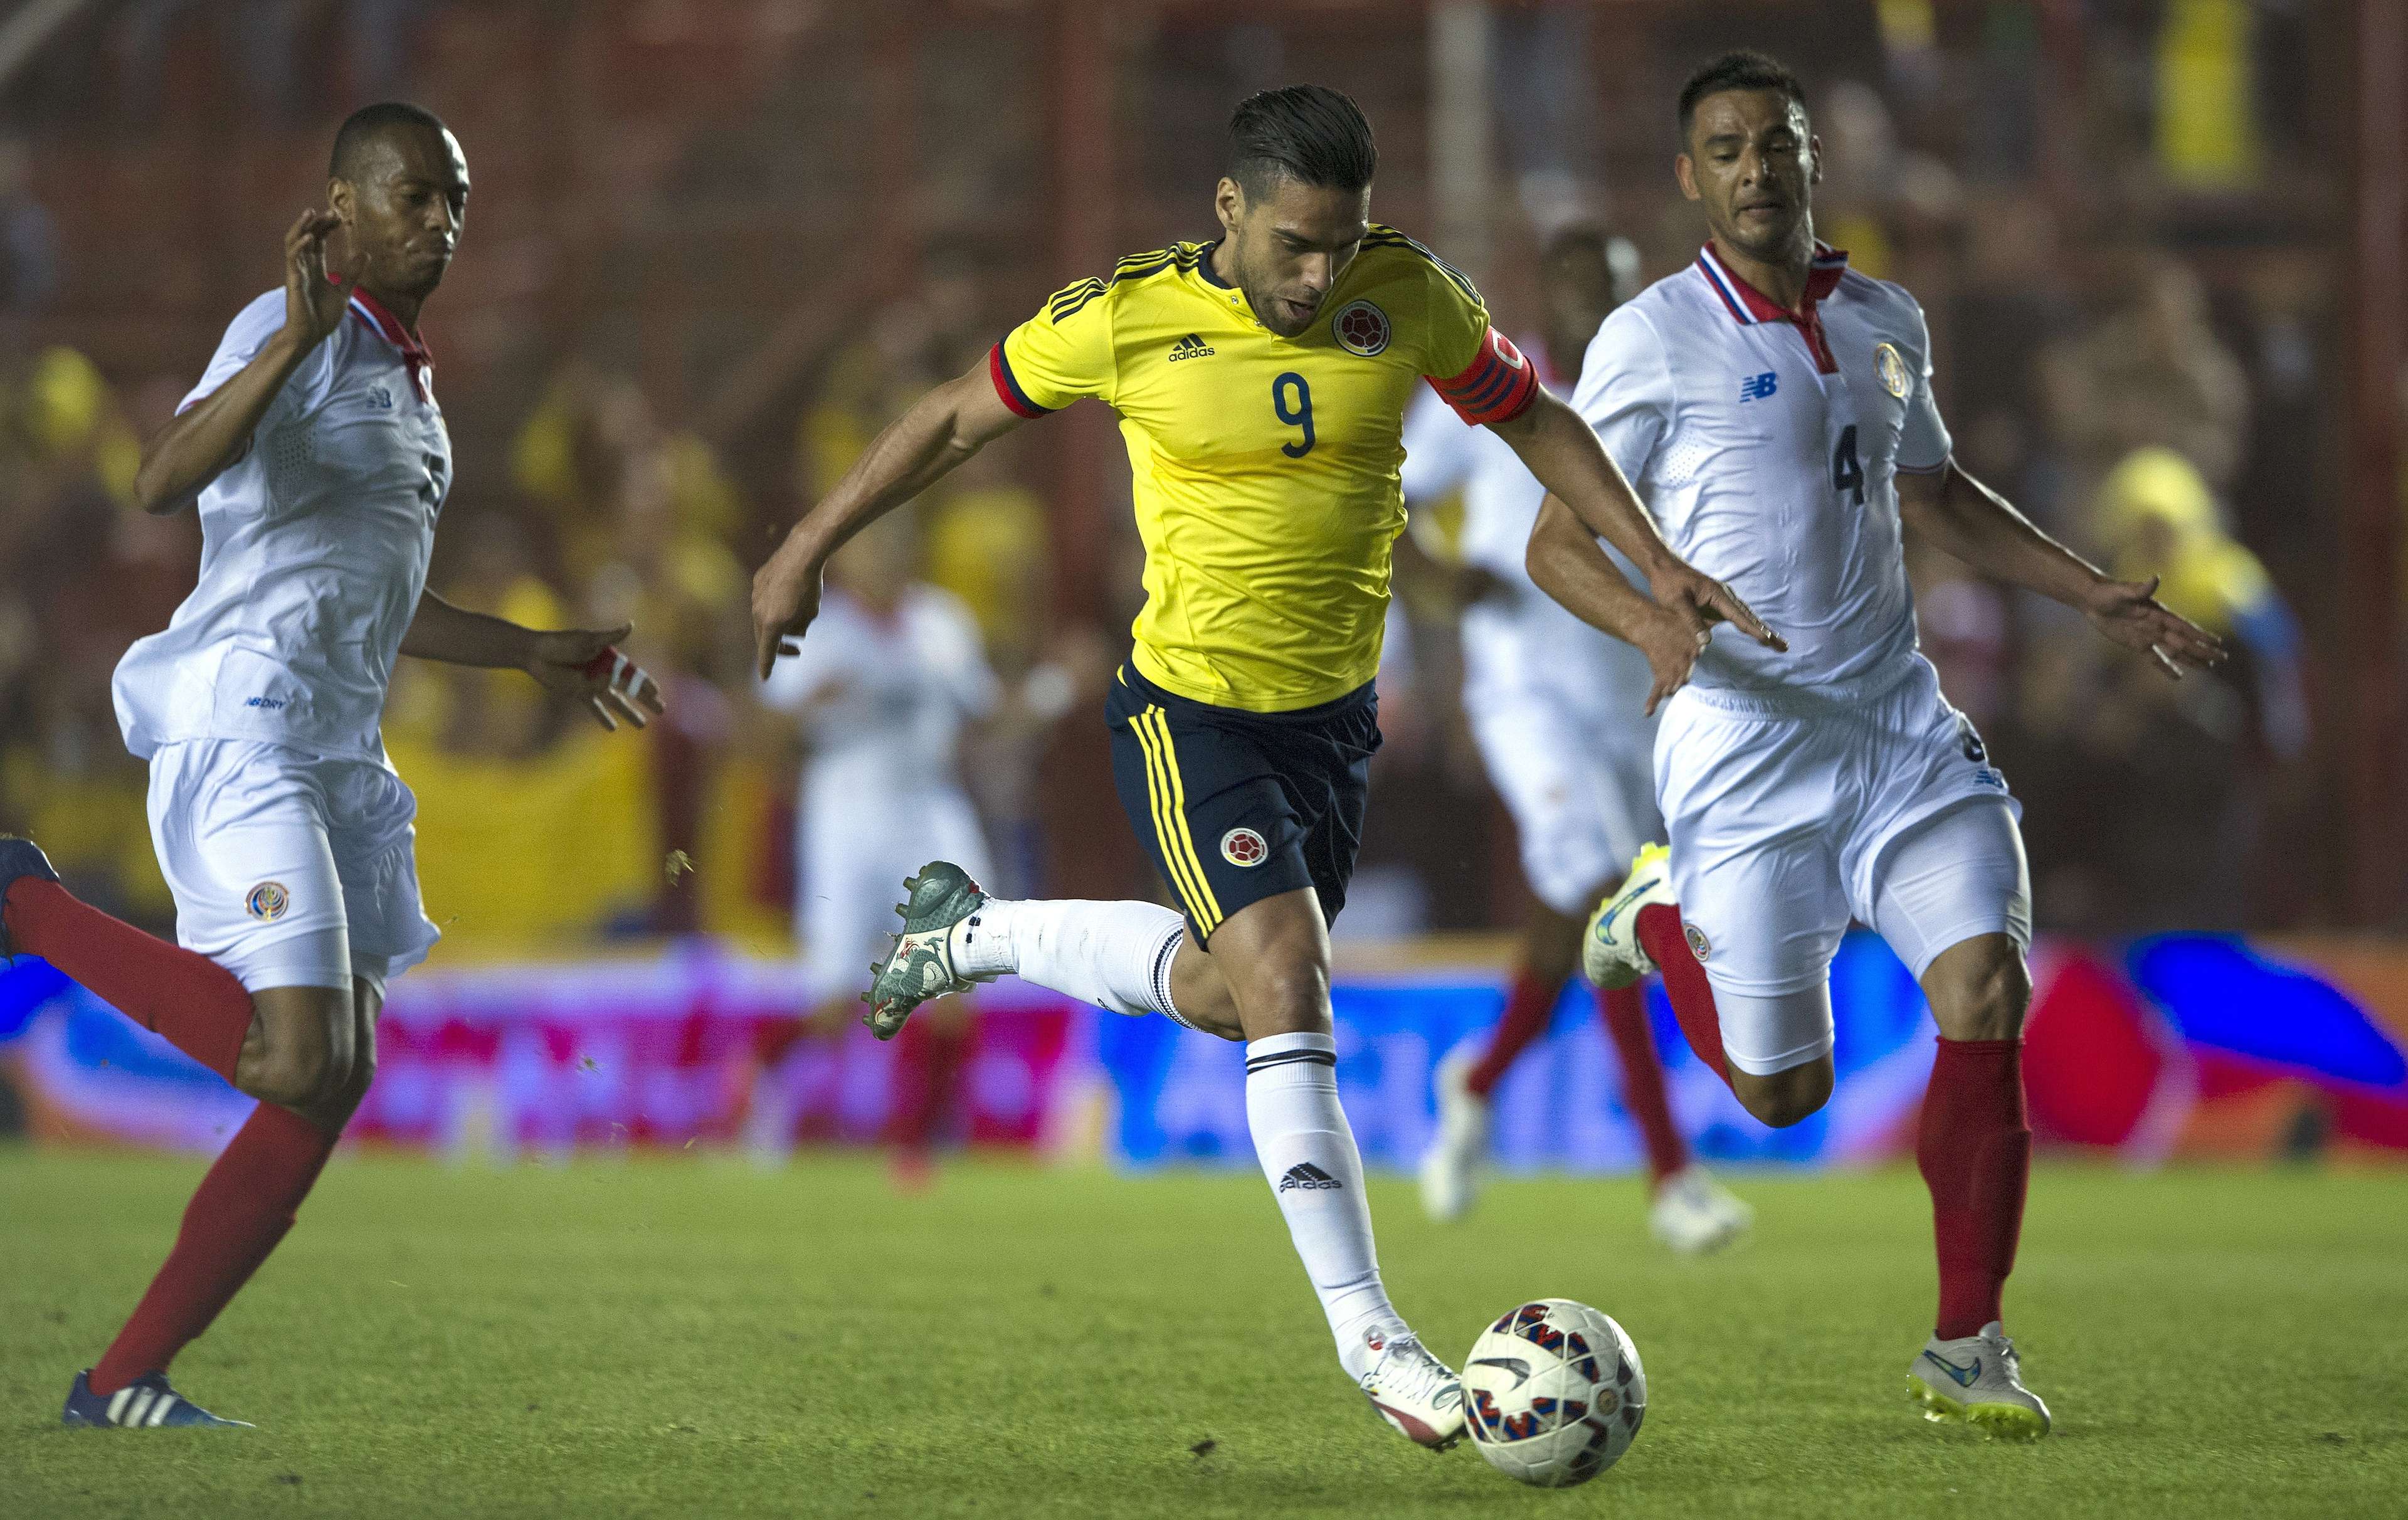 GALERÍA: Colombia vs Costa Rica